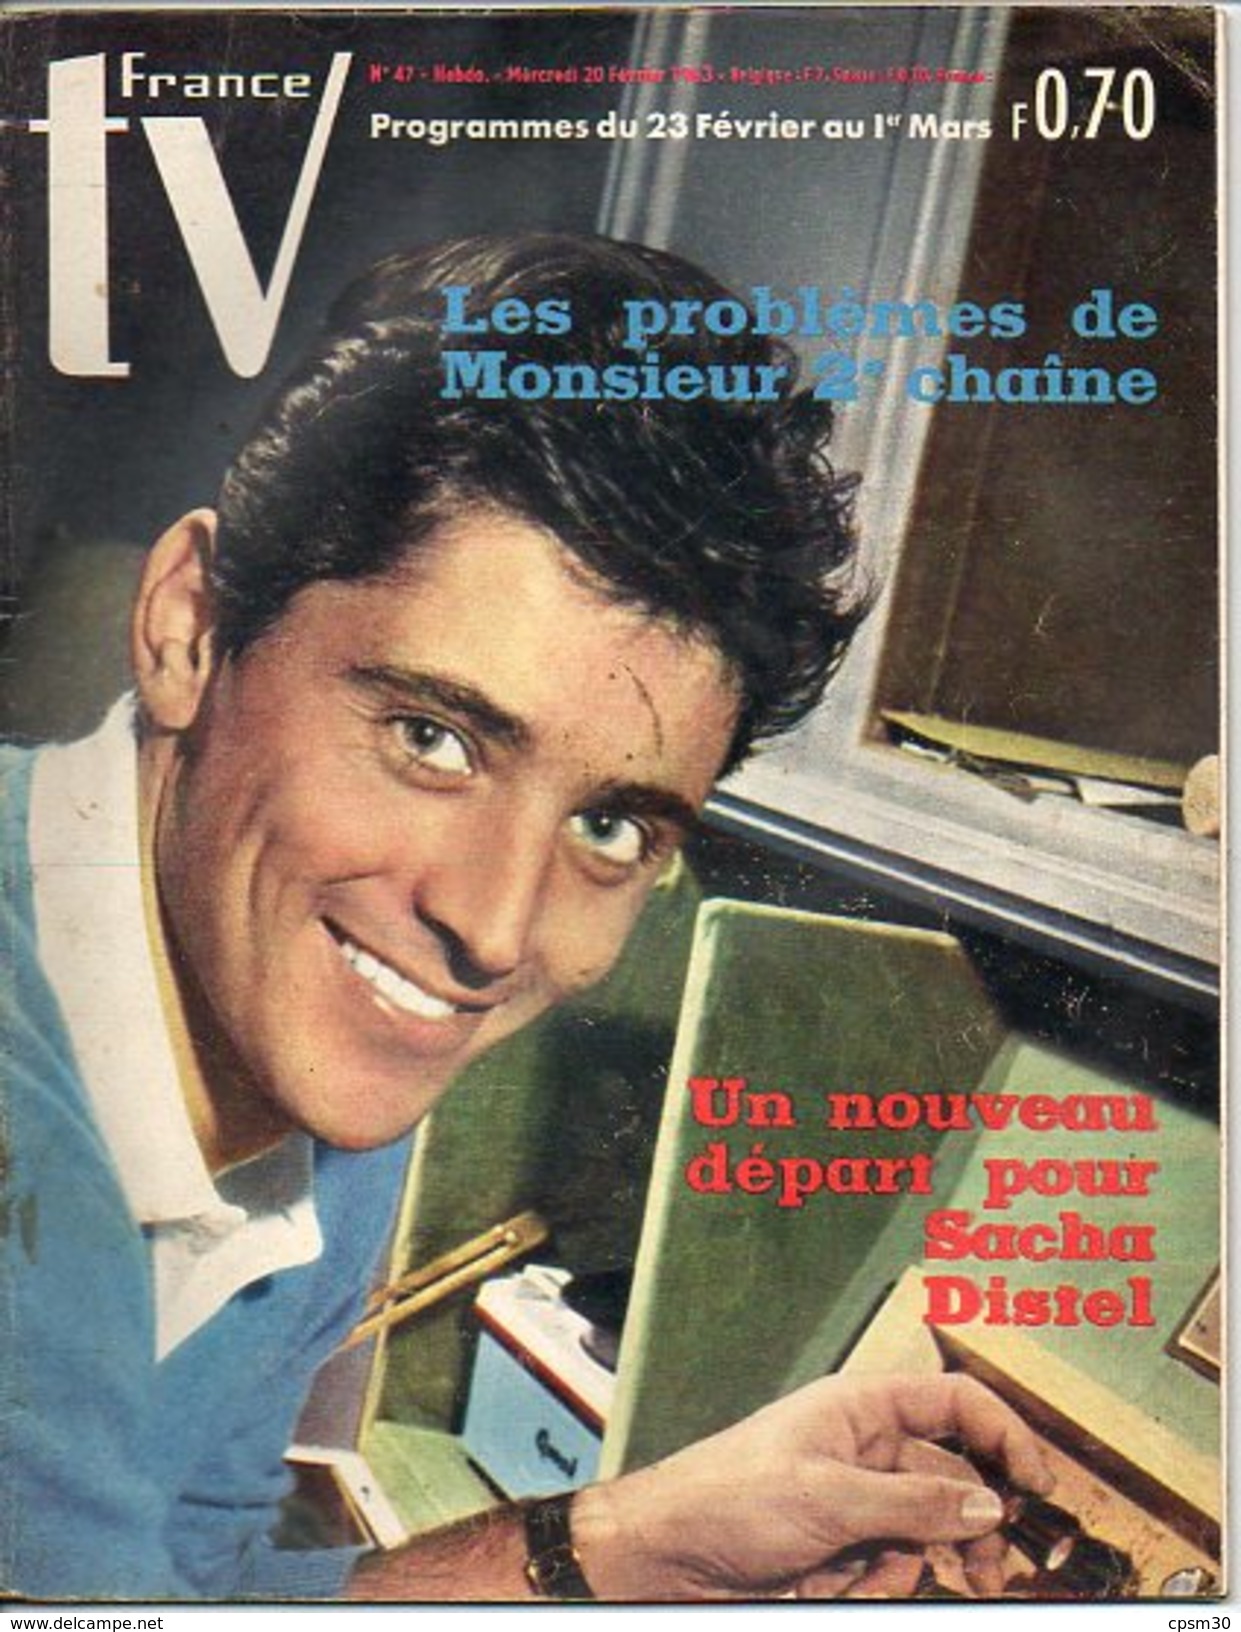 TV France N° 047 - Février 1963 - S Distel 3p - Rugby 3p - J Hallyday - R Dhery - S Loren - P Dedieu - D Paturel - Cinéma/Télévision